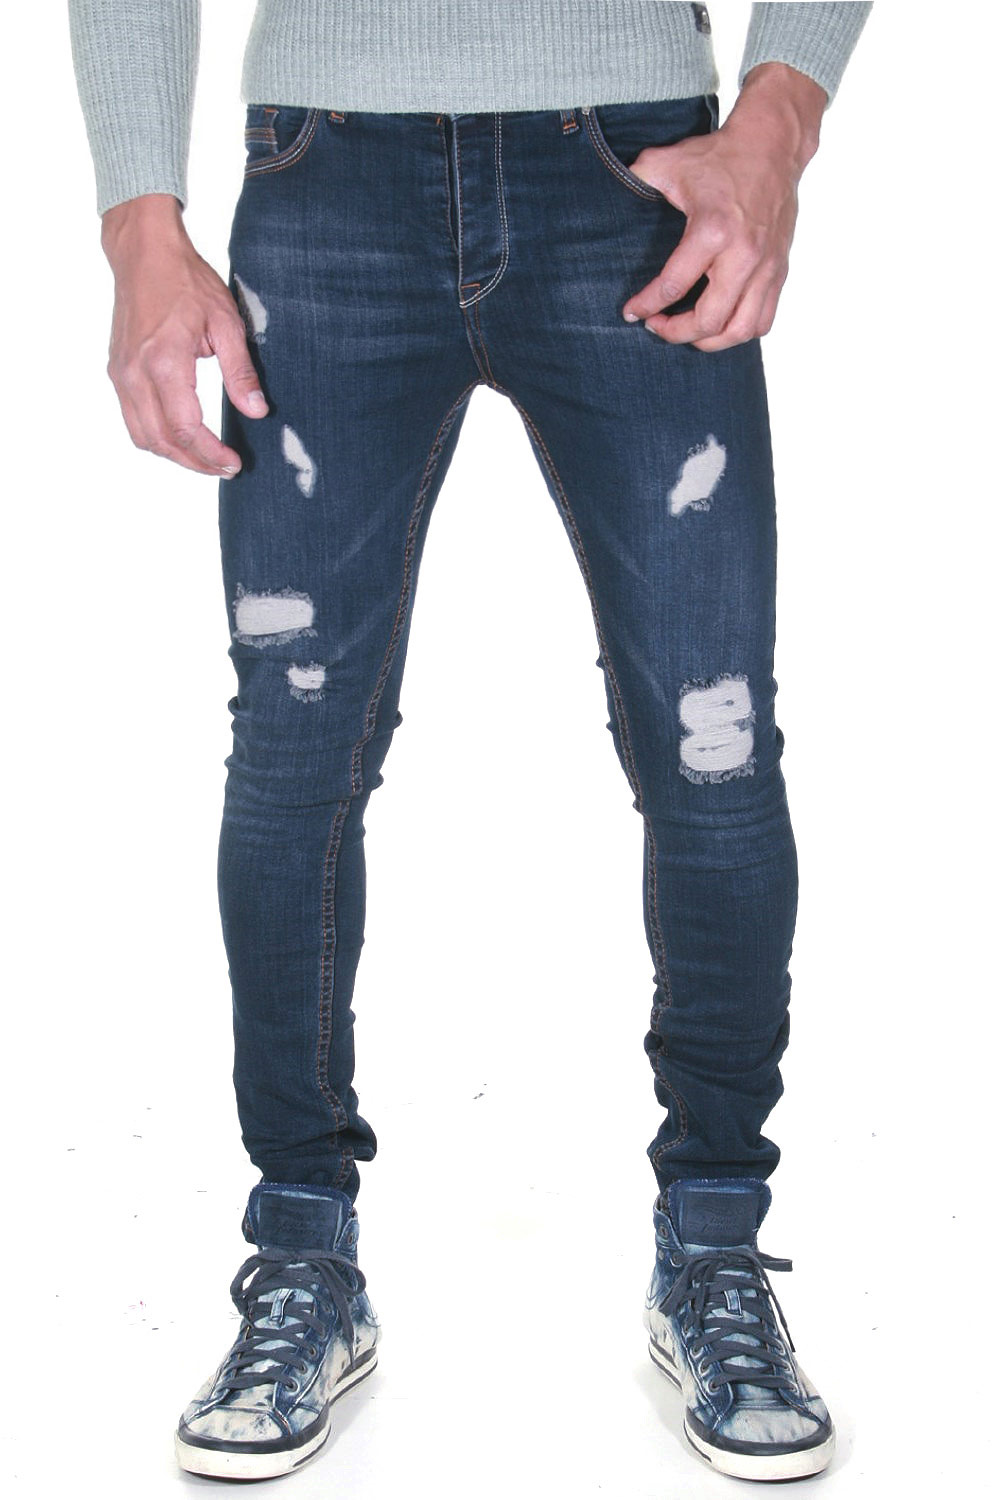 MODE MAKERS Jeans auf oboy.de